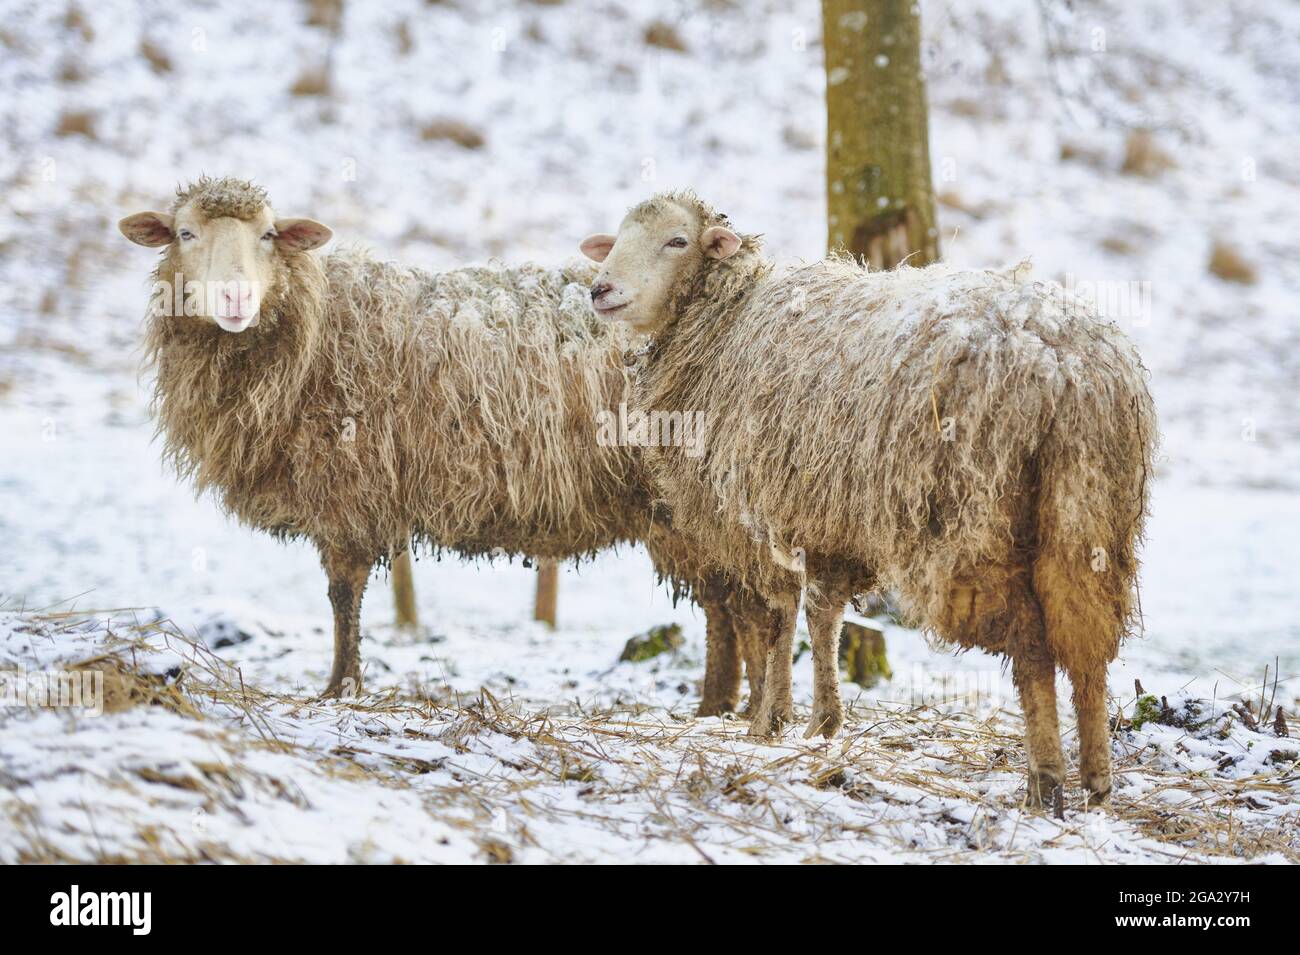 Primo piano ritratto di due pecore (Ovis aries) su un prato nevoso in inverno guardando la fotocamera Foto Stock